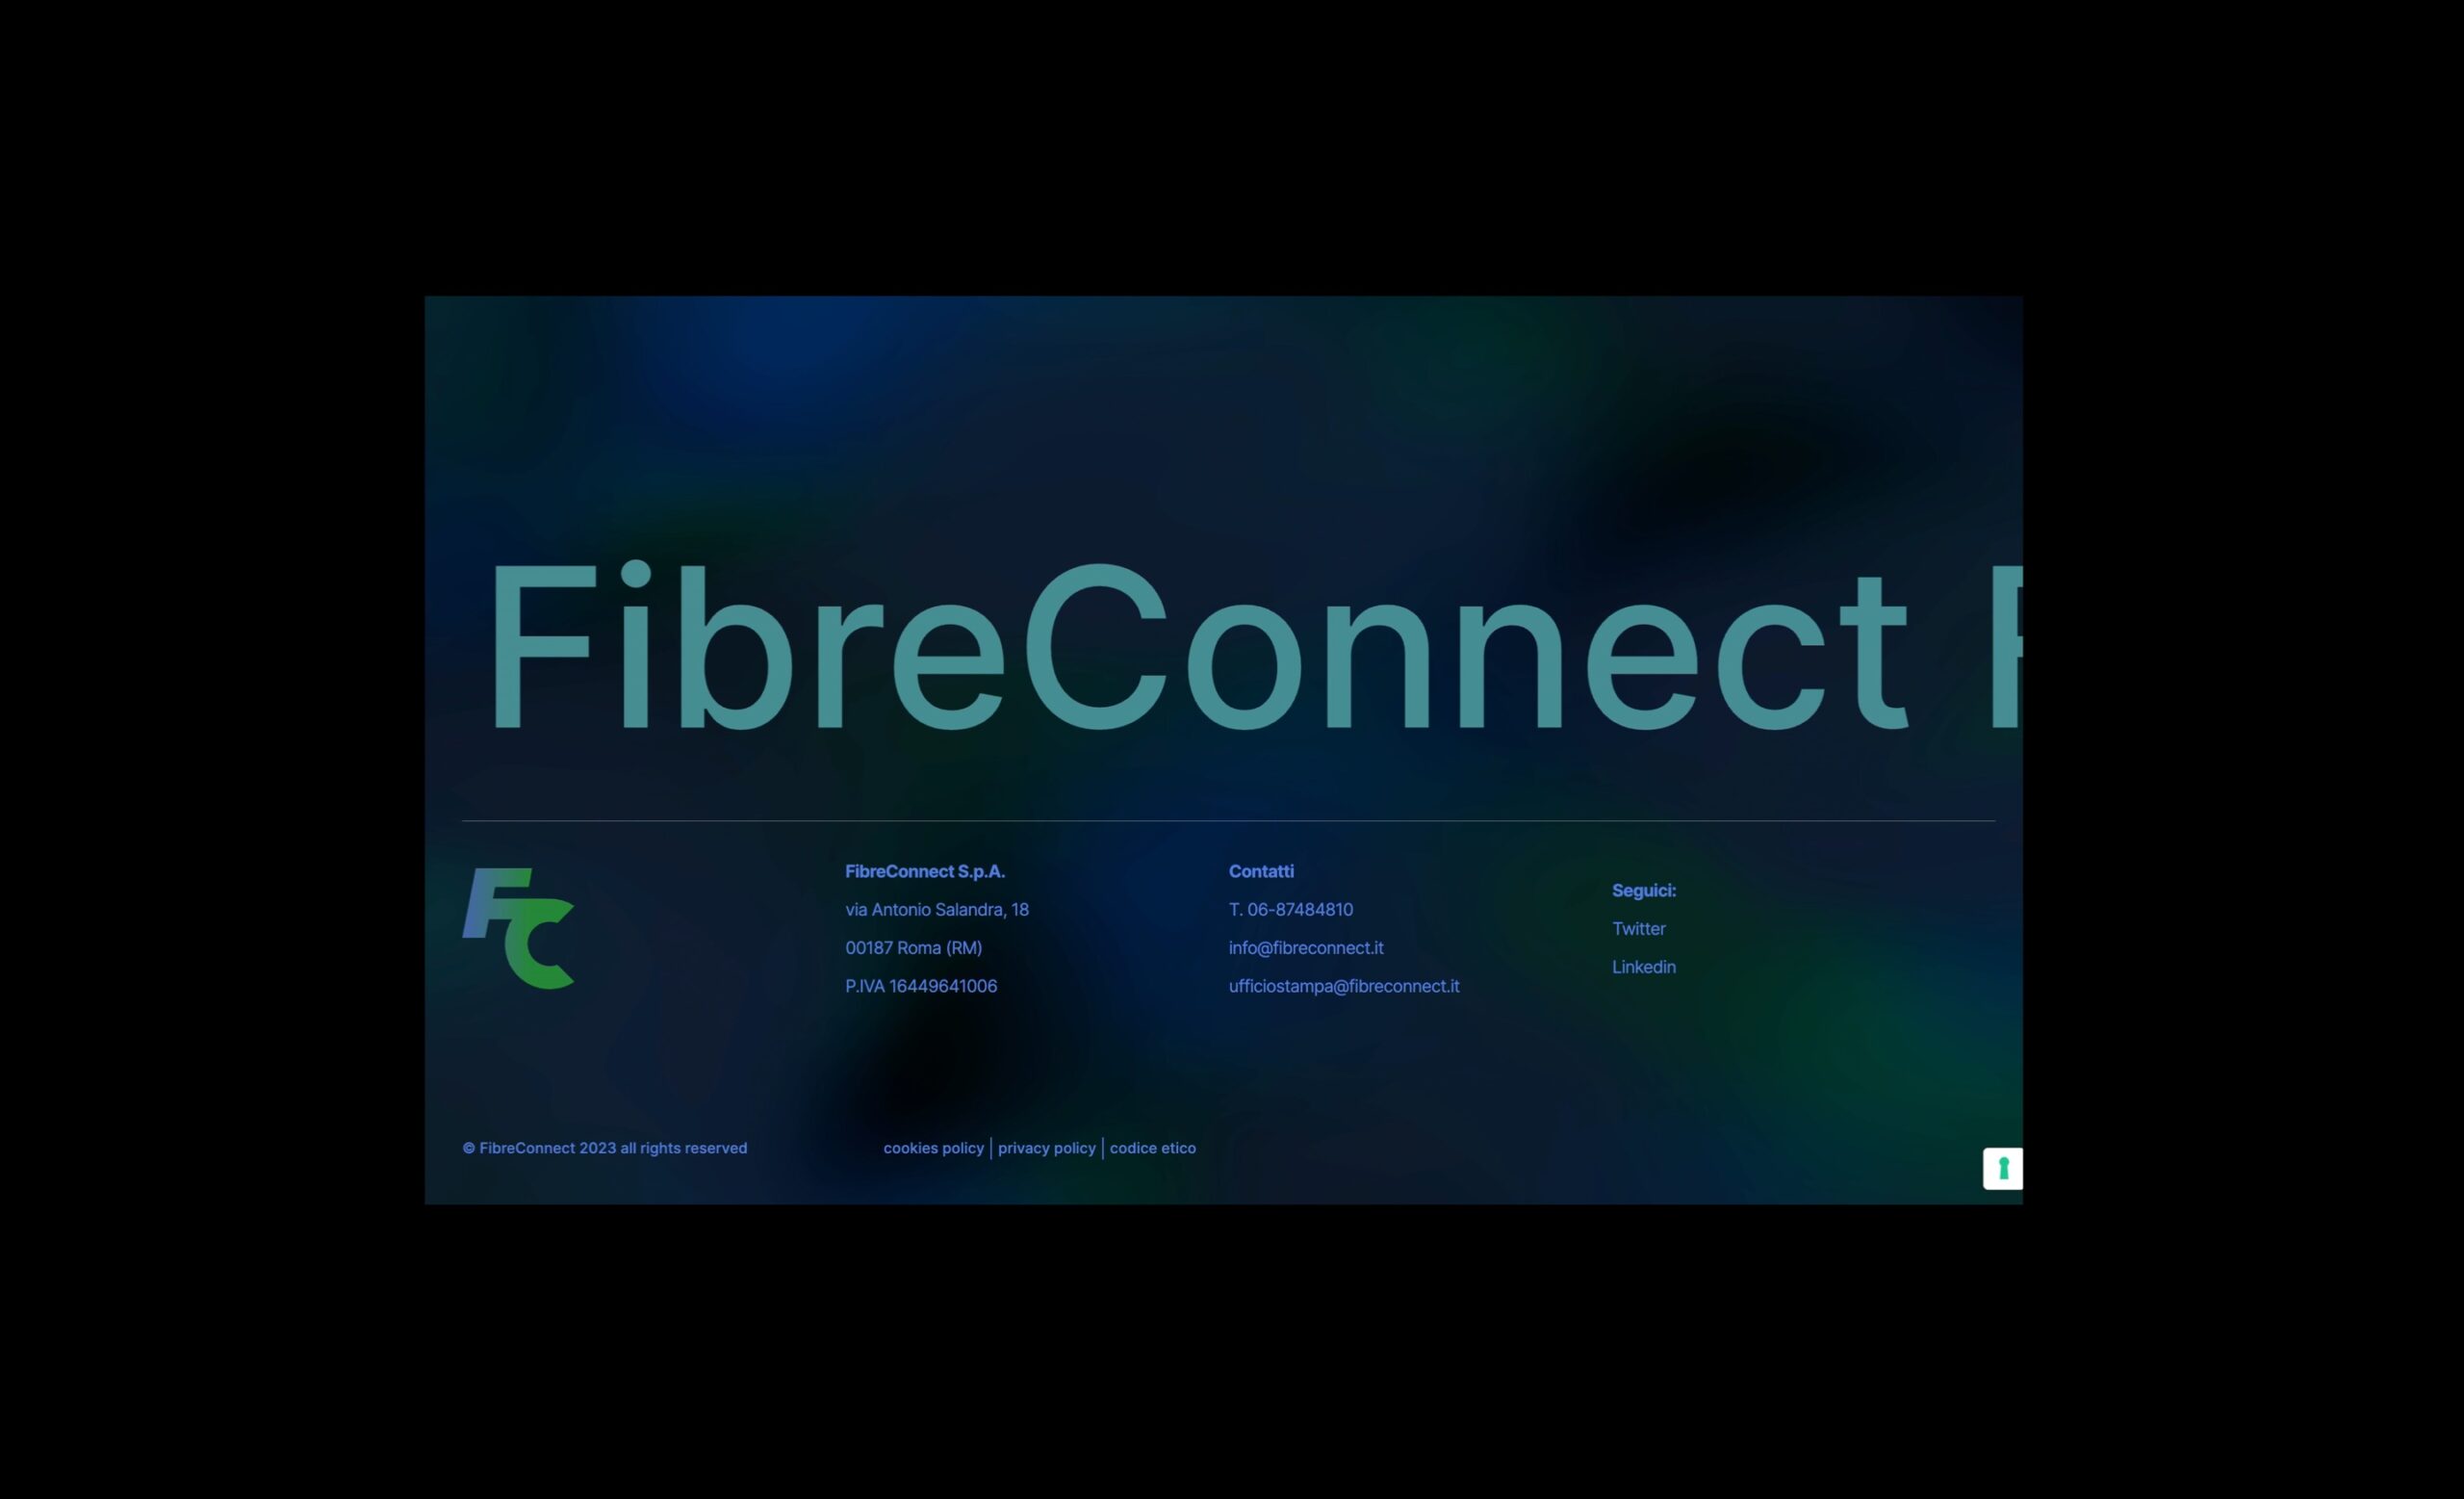 Fibreconnect website